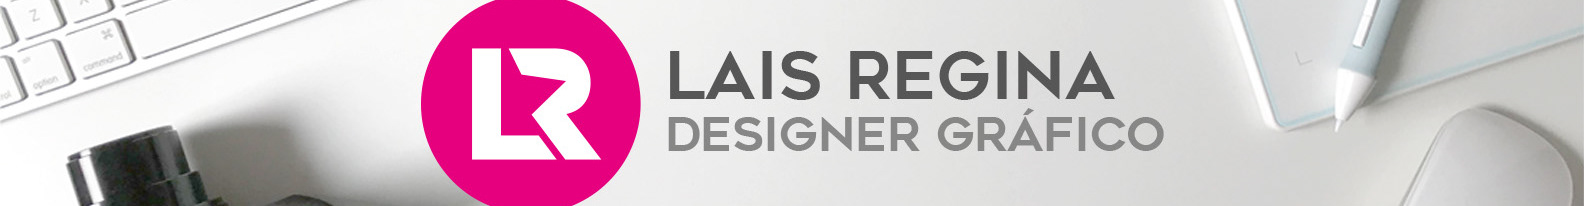 Lais Regina Design Studio's profile banner